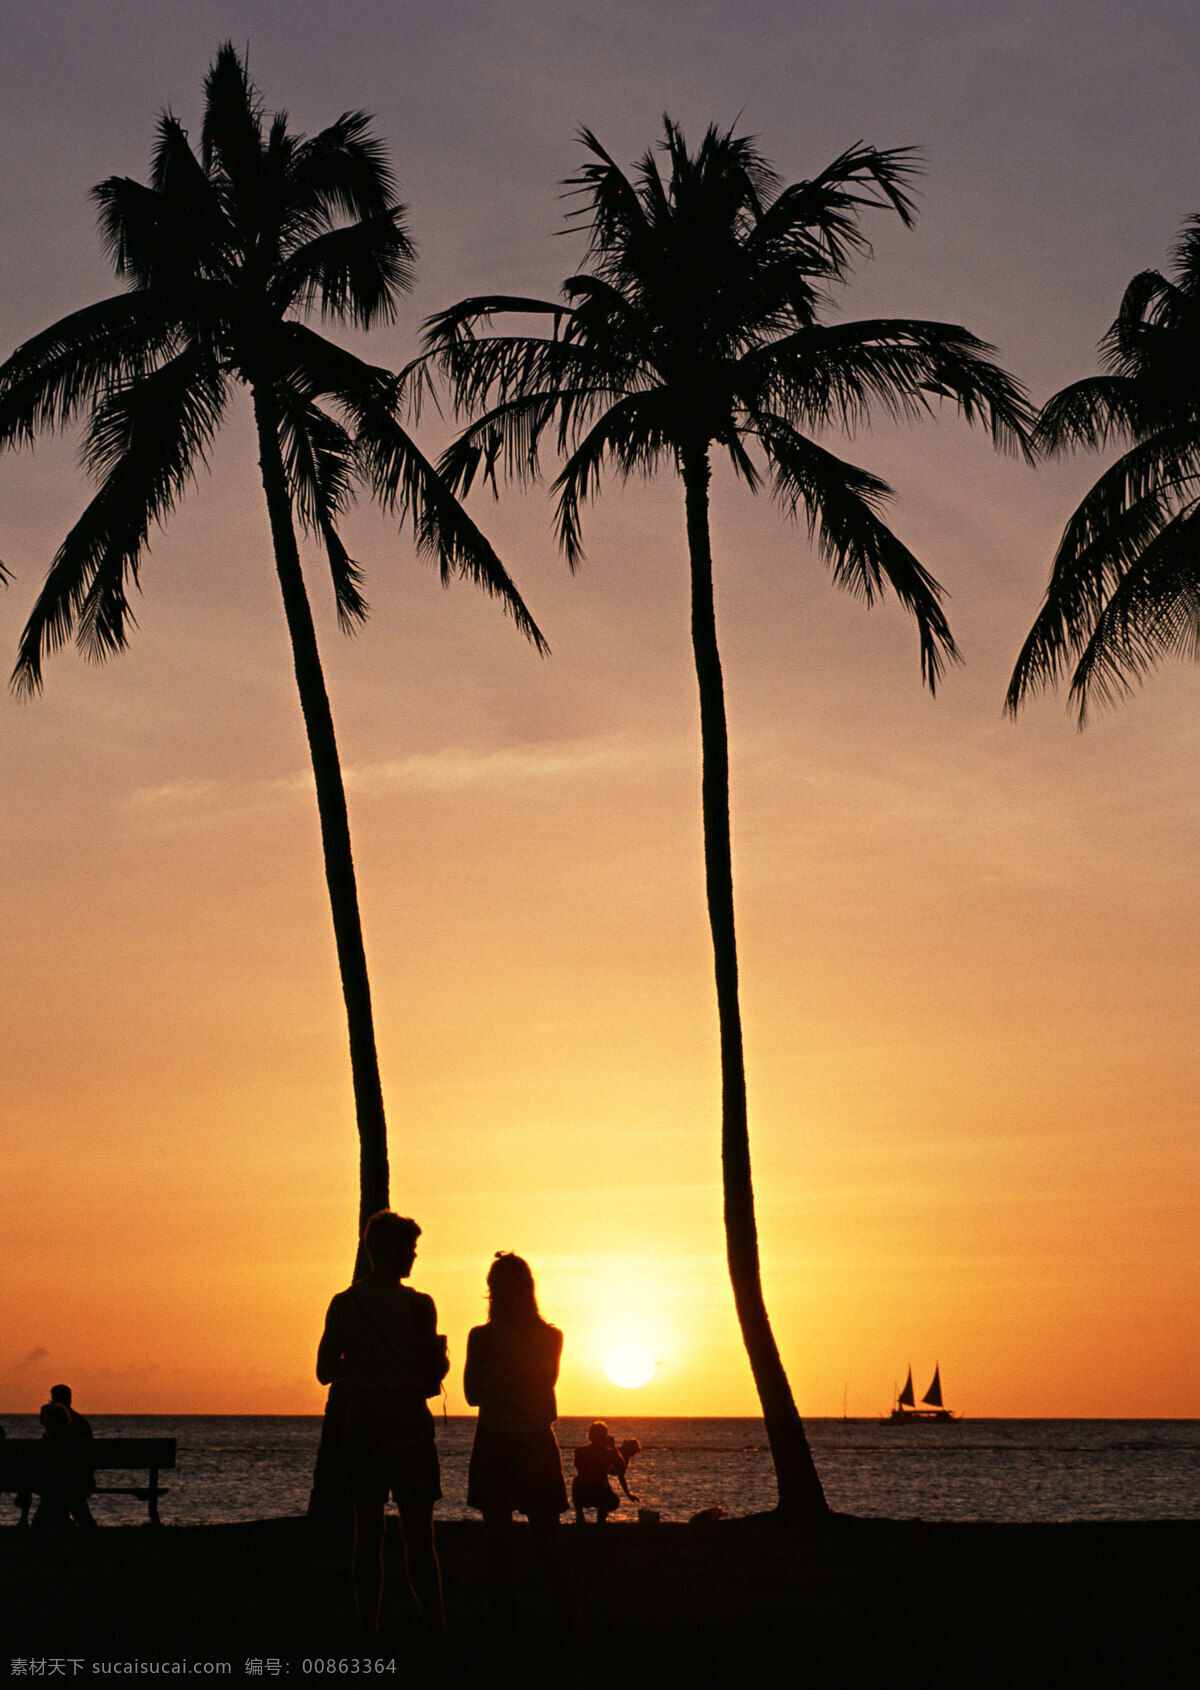 海边 日落 旅游 风景区 夏威夷 夏威夷风光 悠闲 假日 沙滩 热带树 人物剪影 大海图片 风景图片